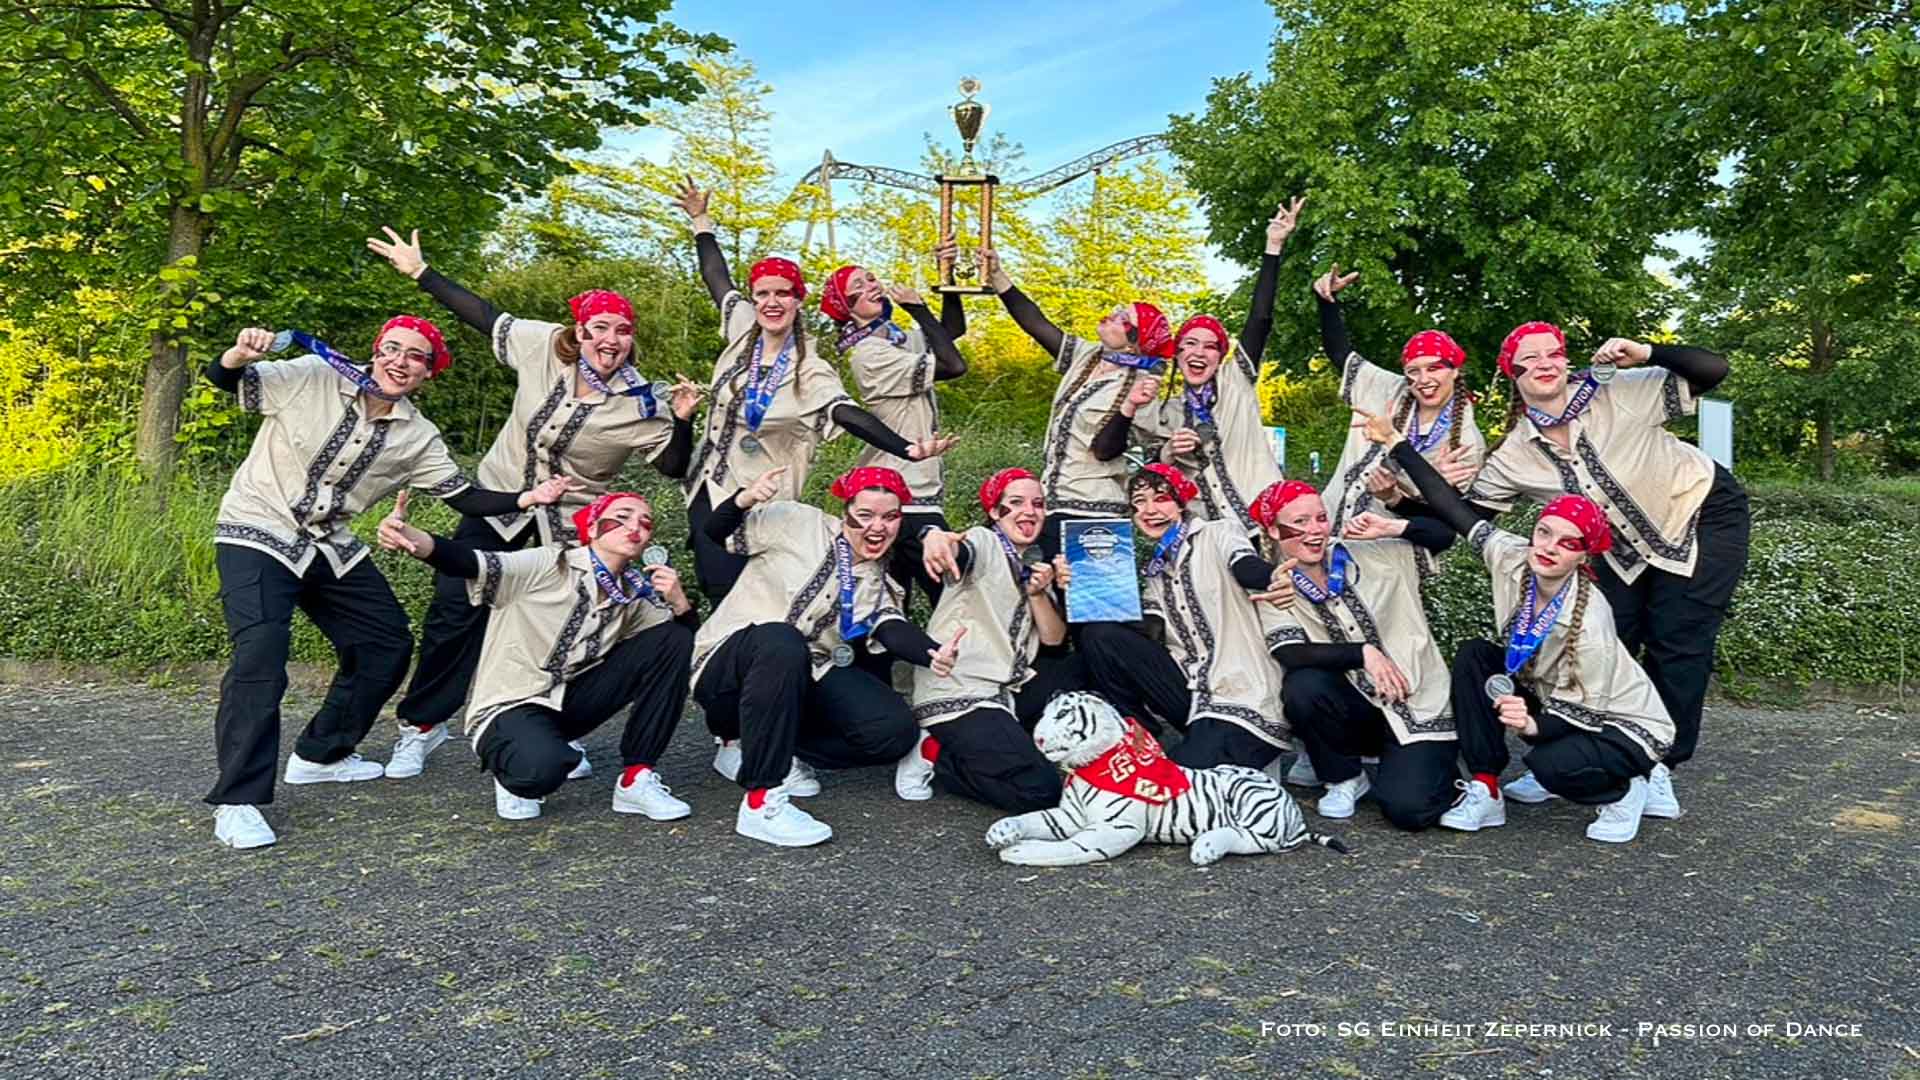 Glückwunsch, Passion of Dance: Medaillen beim Cheerleading Championship